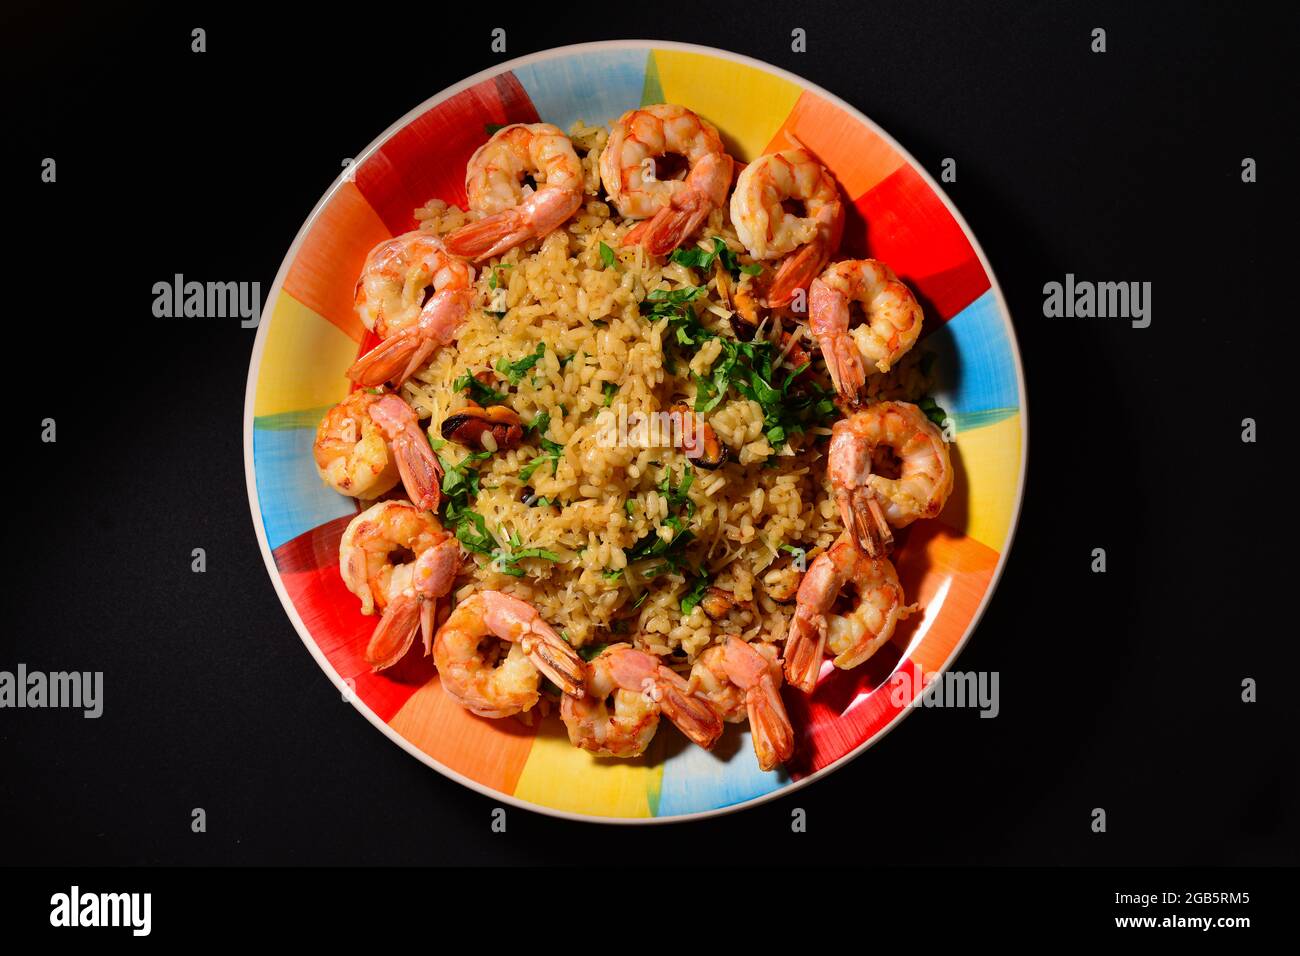 Traditionelles italienisches Gericht, Fisch- und Meeresfrüchtegriotto, Reis mit Garnelen, Muscheln, Knoblauch, Weißwein, Petersilie auf einem farbenfrohen, schönen Teller. Stockfoto